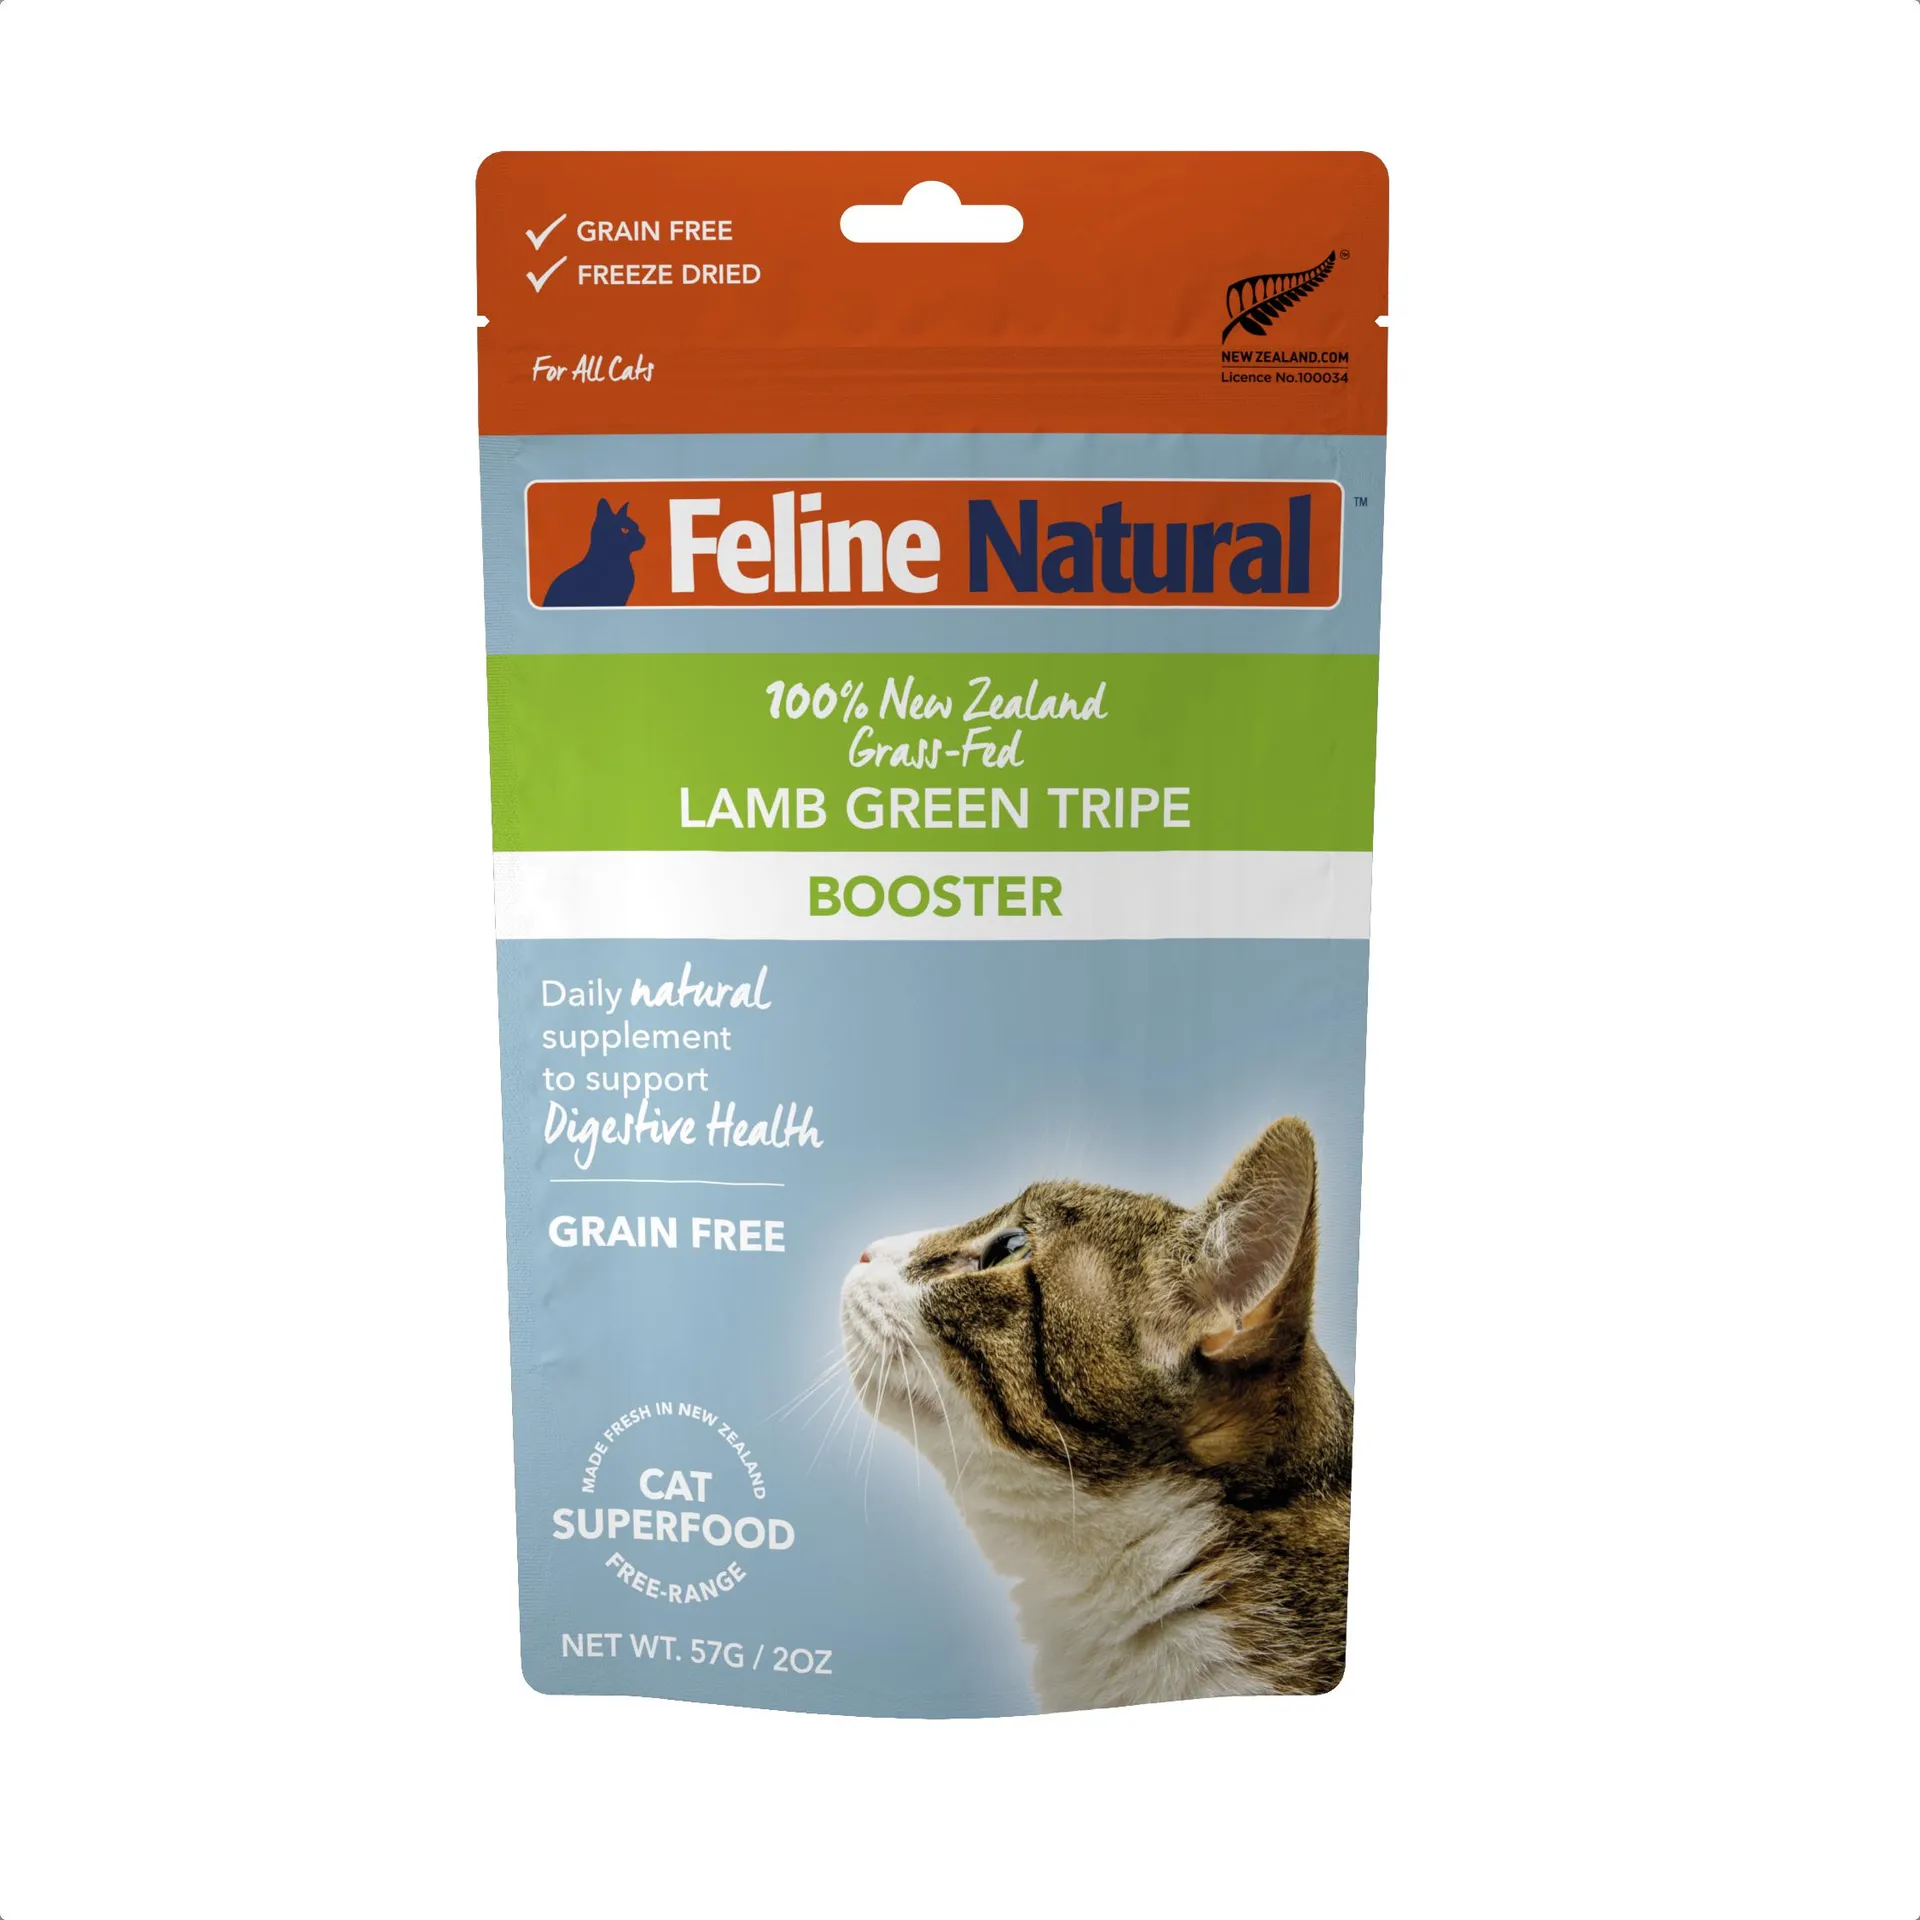 Feline Natural Lamb Green Tripe Booster Dry Cat Food